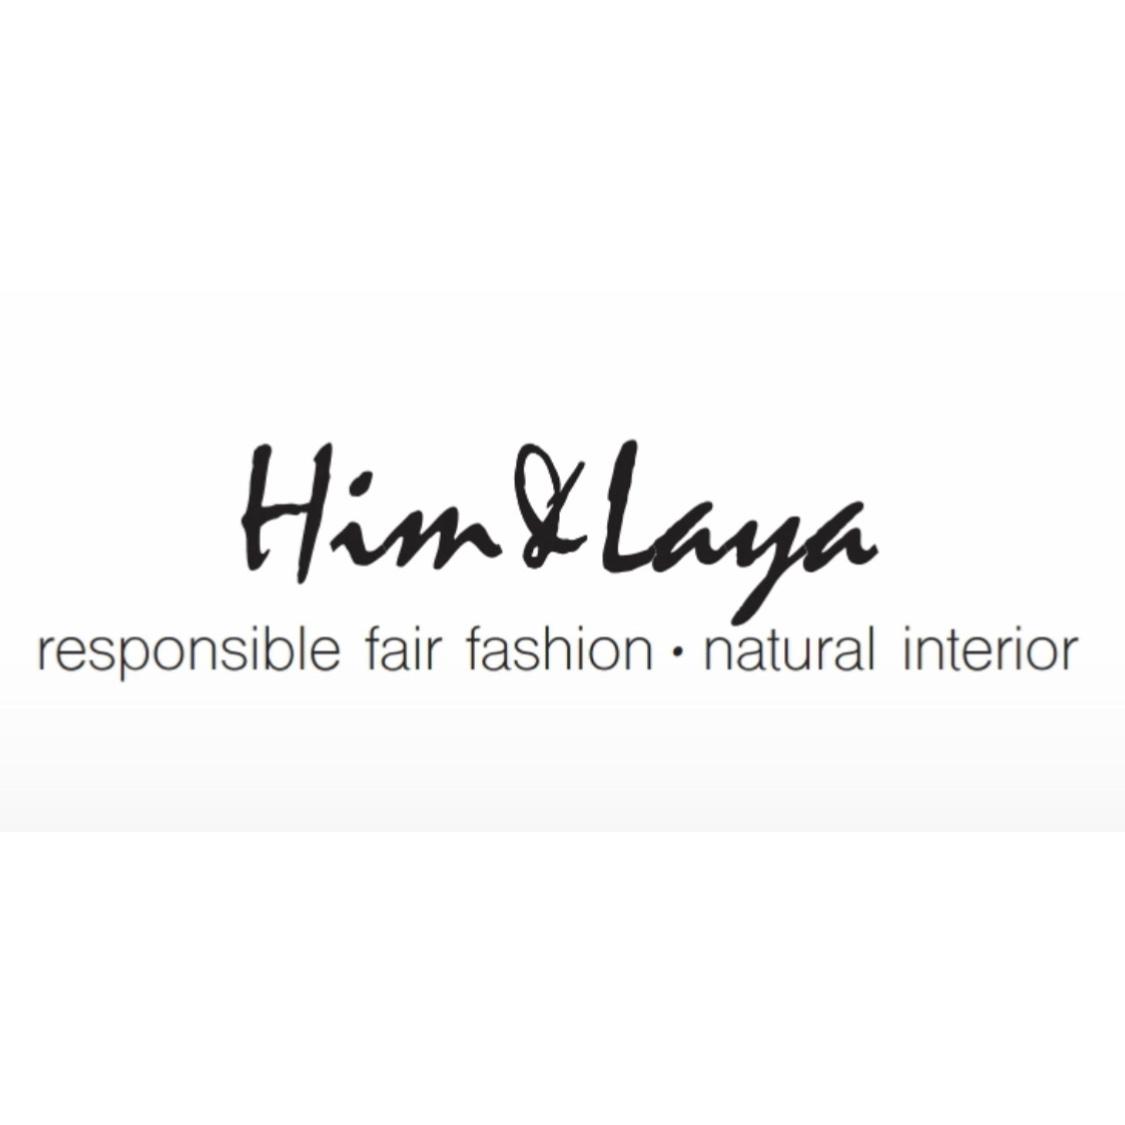 Him & Laya - responsible fair fashion - natural Interior in Hamburg - Logo